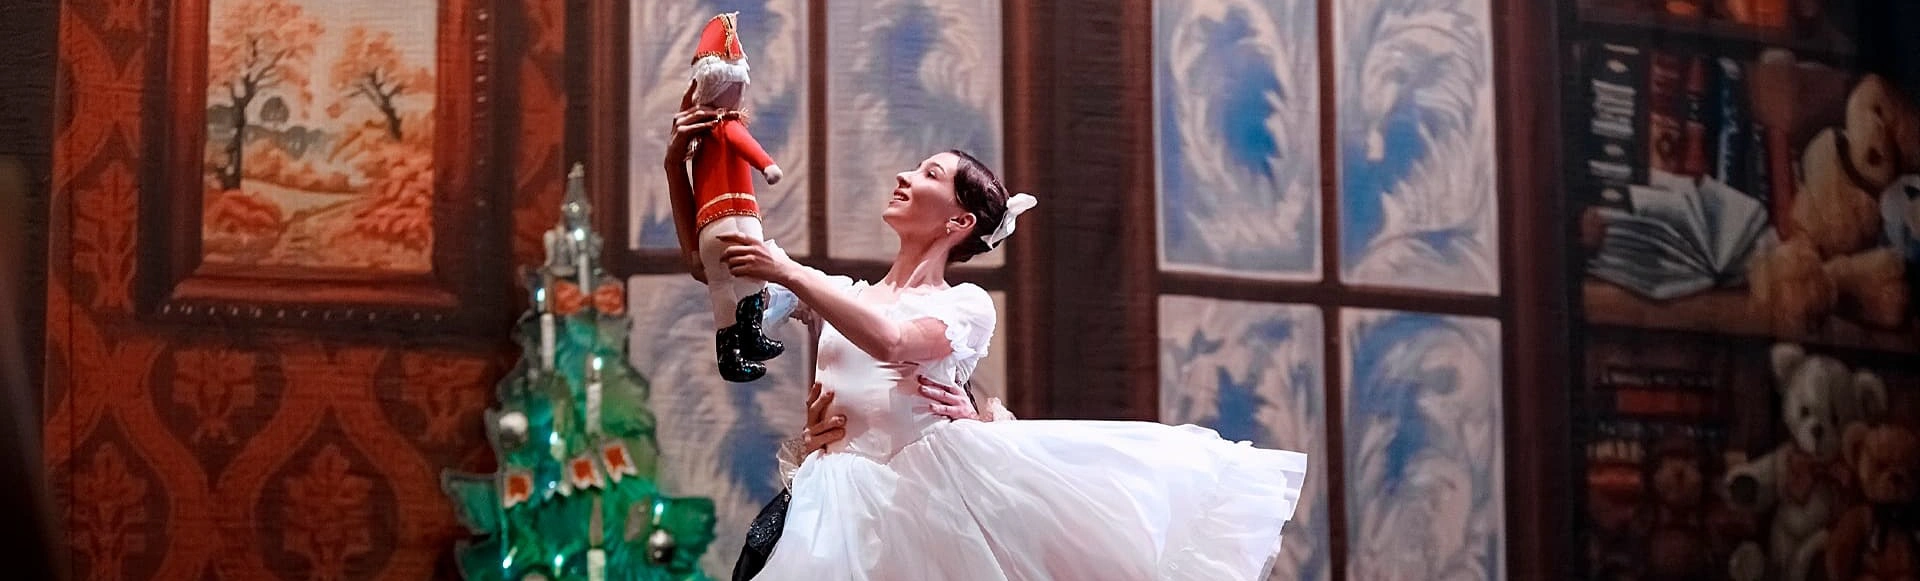 Премьера классического балета «Щелкунчик» с видеопроекциями